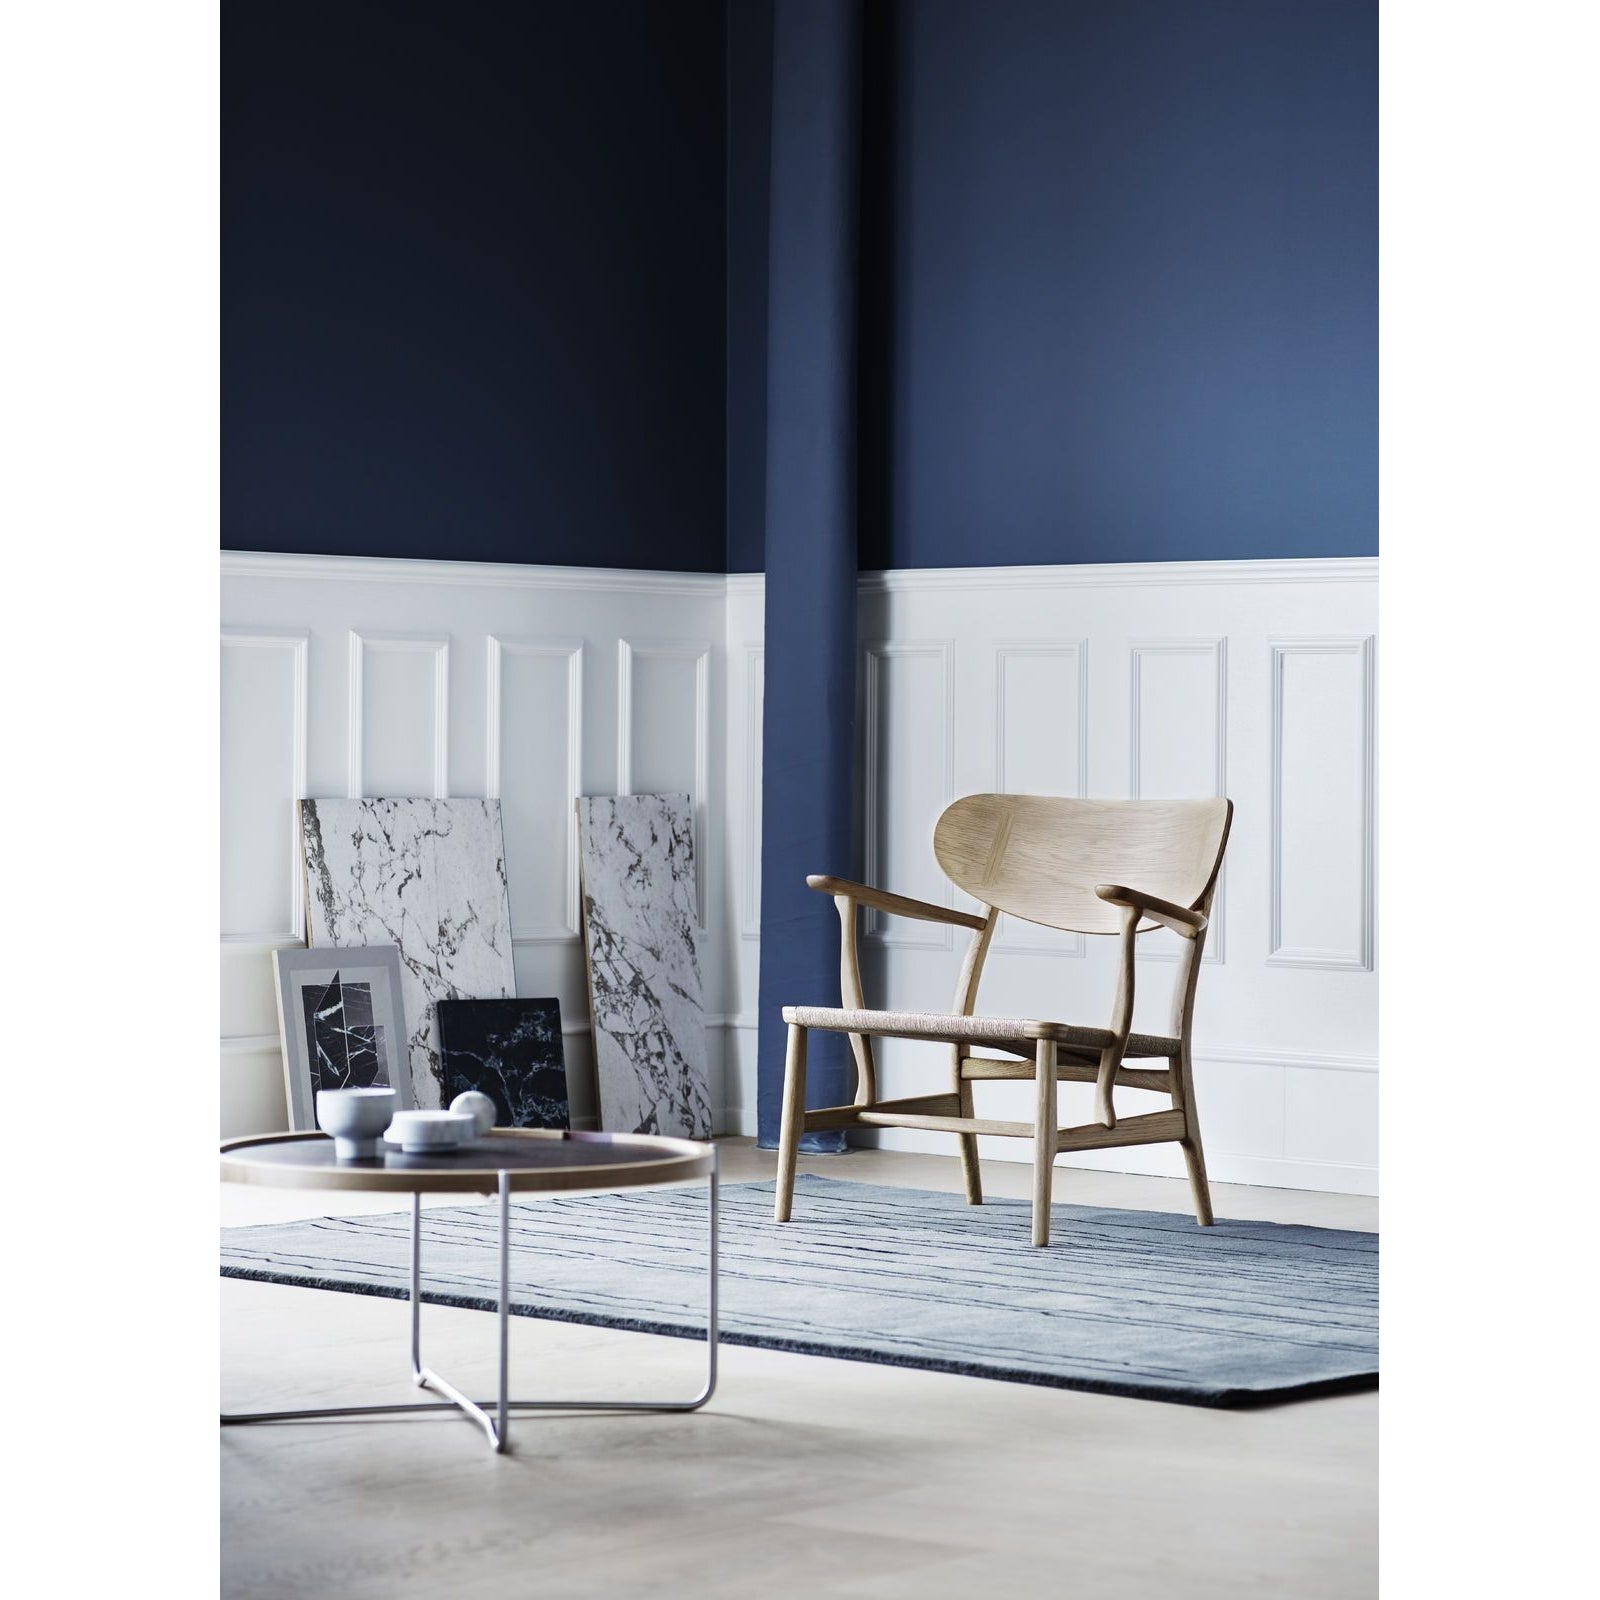 Carl Hansen Ch22 Lounge Chair, Oiled Oak/Natural Cord